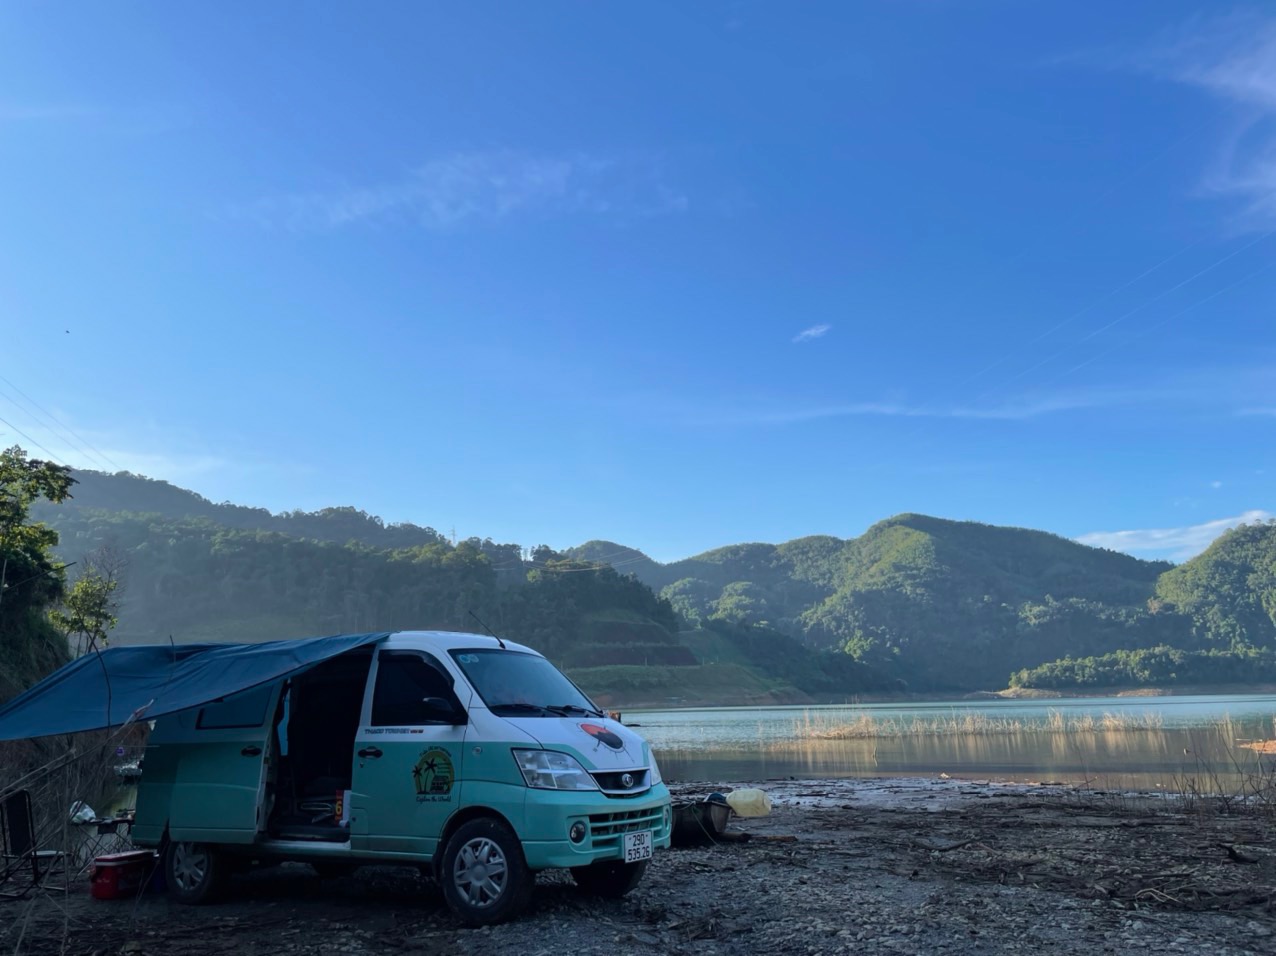 Bán Triton mua xe van THACO hơn 300 triệu độ camping chạy Bắc Nam hơn 18.000km, chủ xe trải lòng: 'Vui, tiện nhưng đi xa hơi cực' - Ảnh 8.